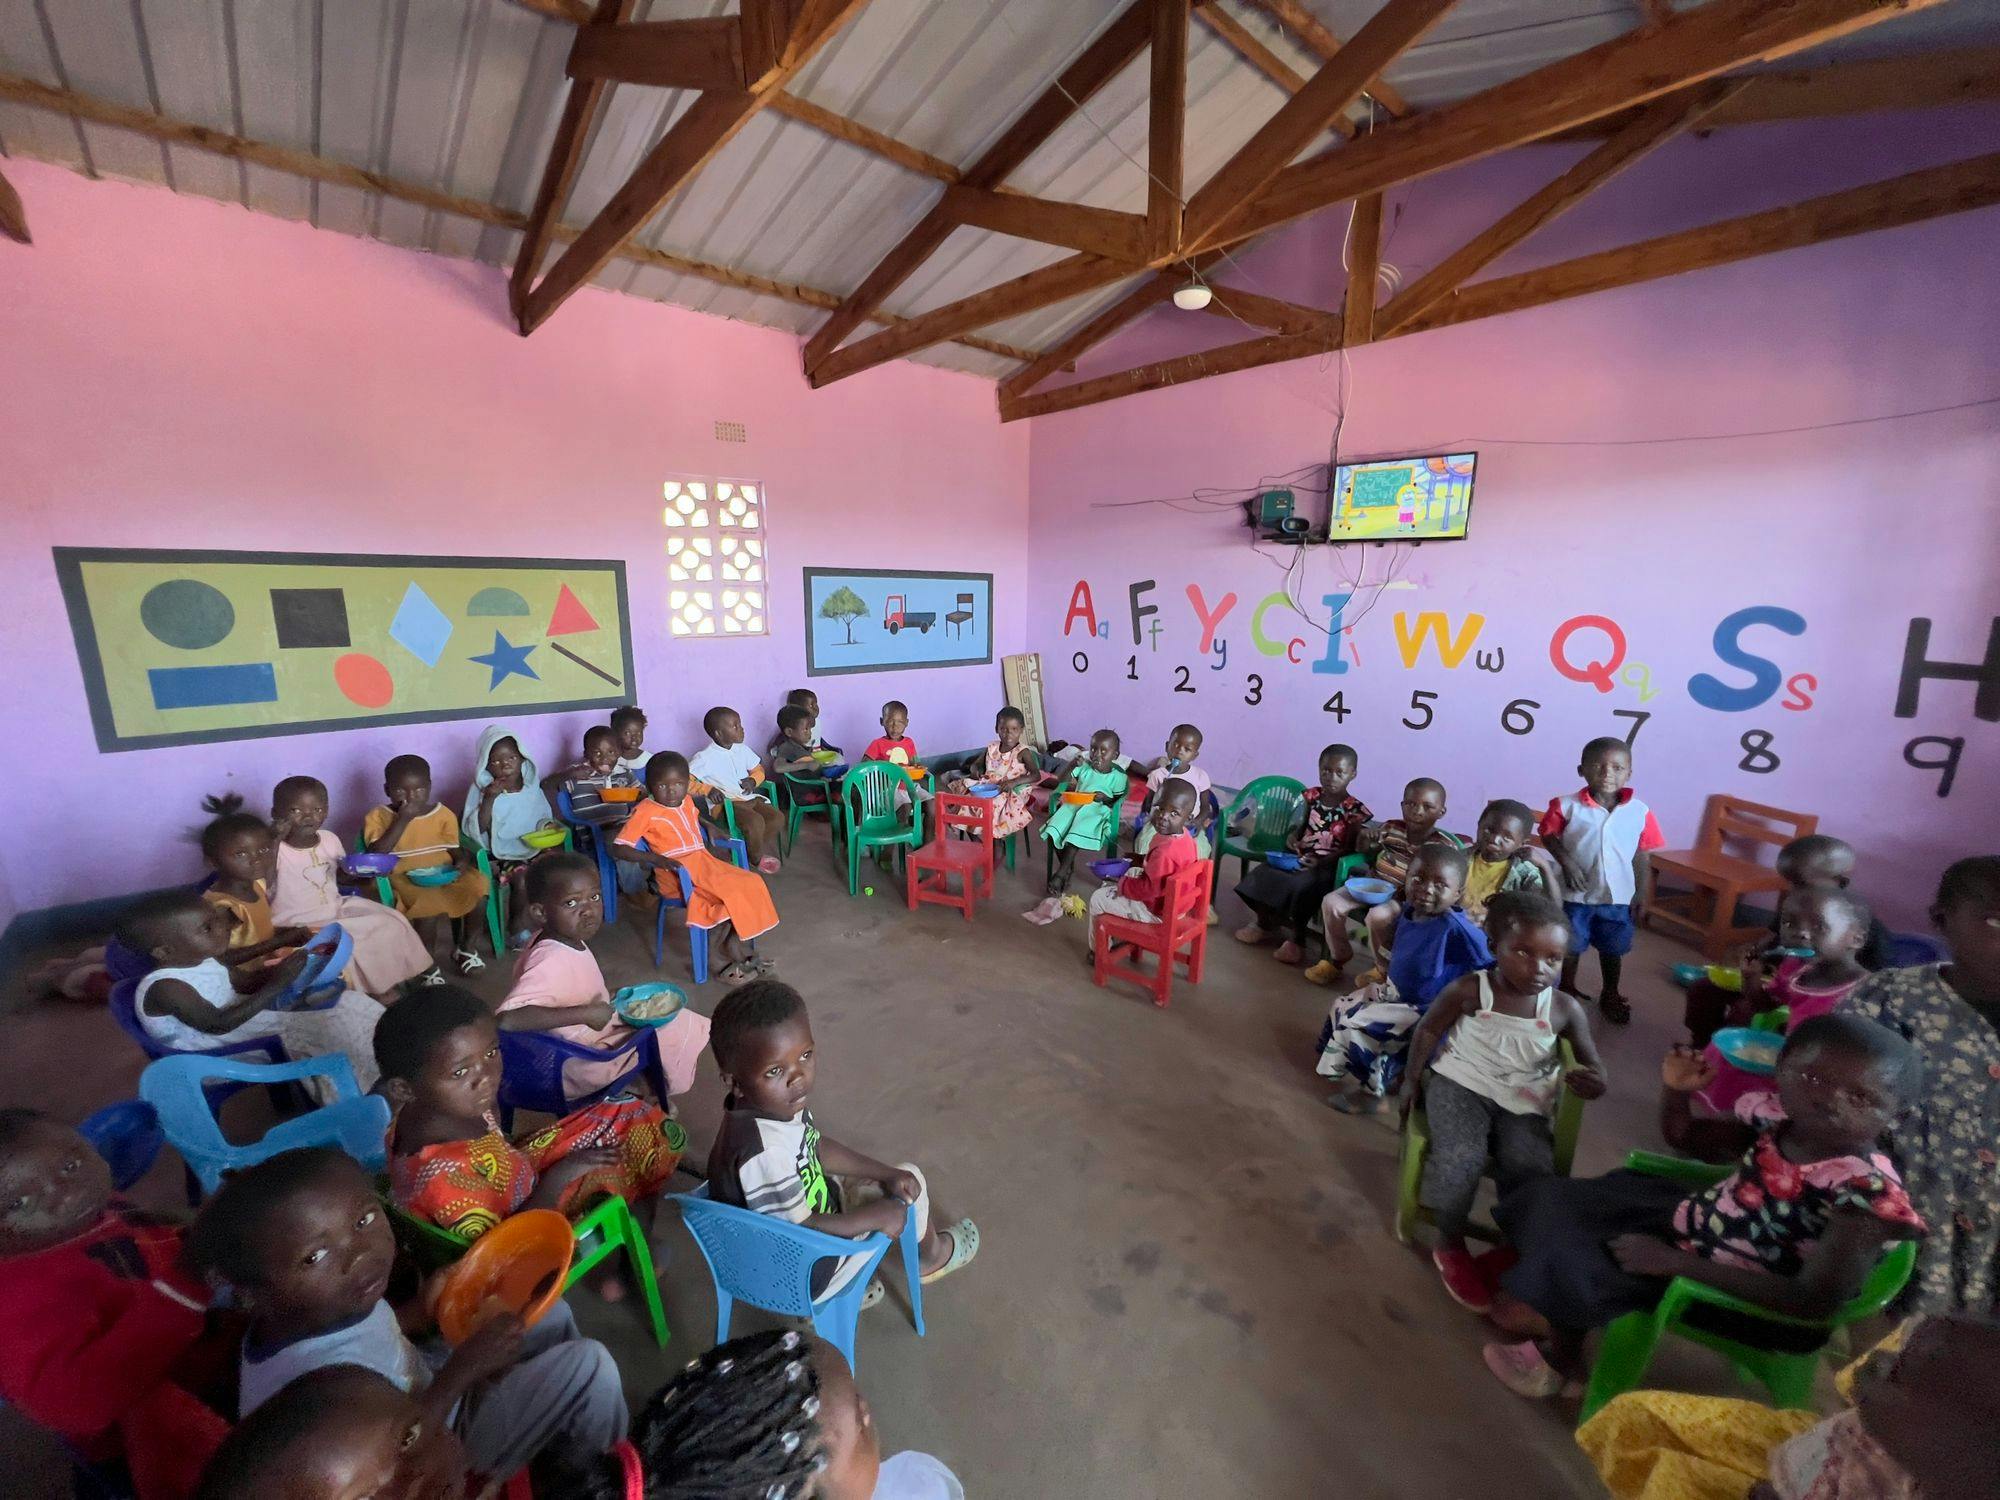 Rebuilding Hope and Education -- Tzu Chi Impact on Malawi Village